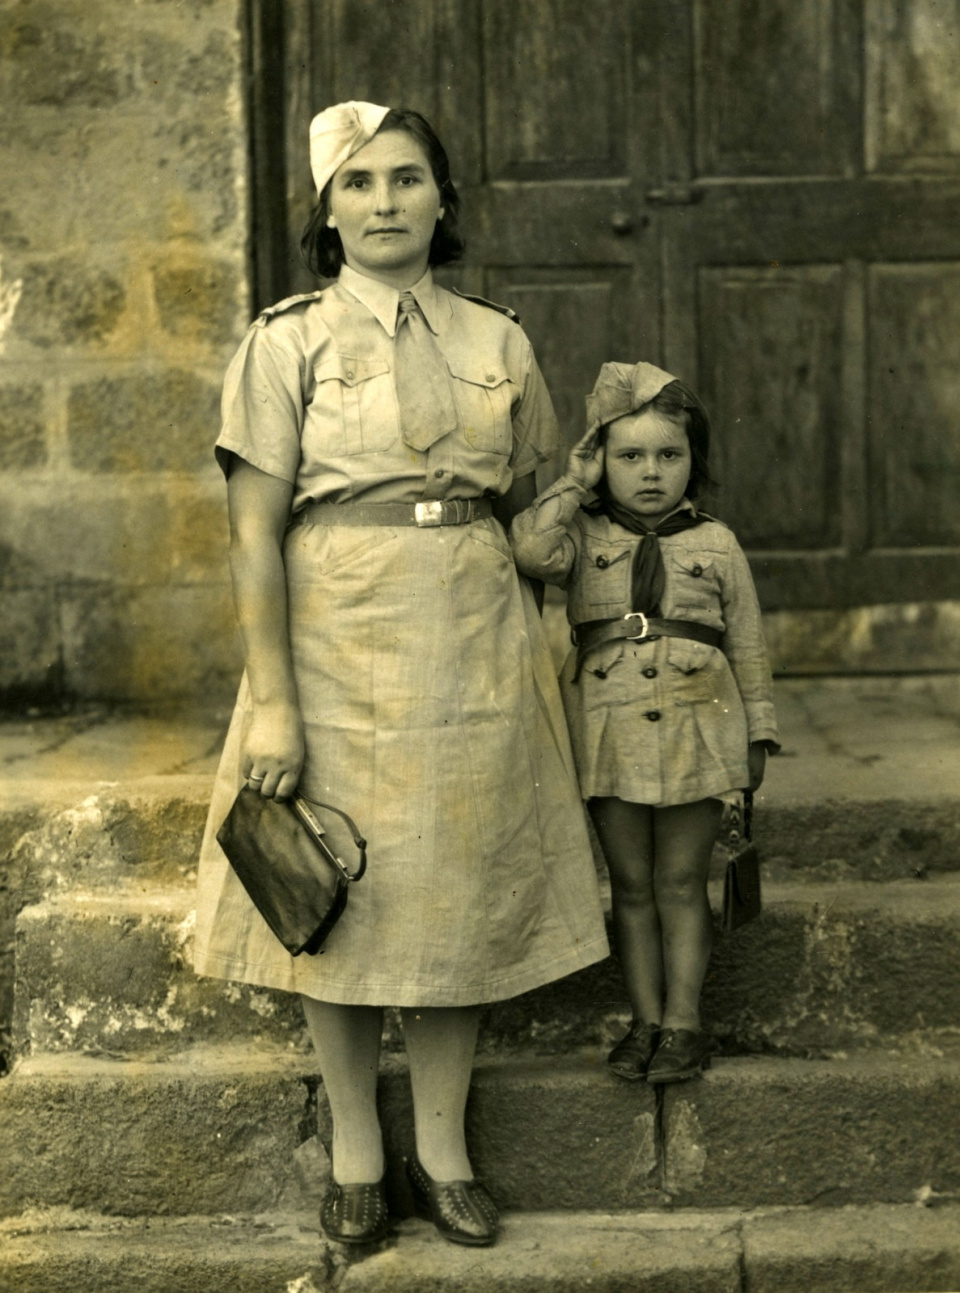 Maria Żołdak z córką Danutą Szeligą, polskie osiedle wTenger, Tanganika (Tanzania), 3.09.1943 r. Archiwum prywatne Danuty Szeligi